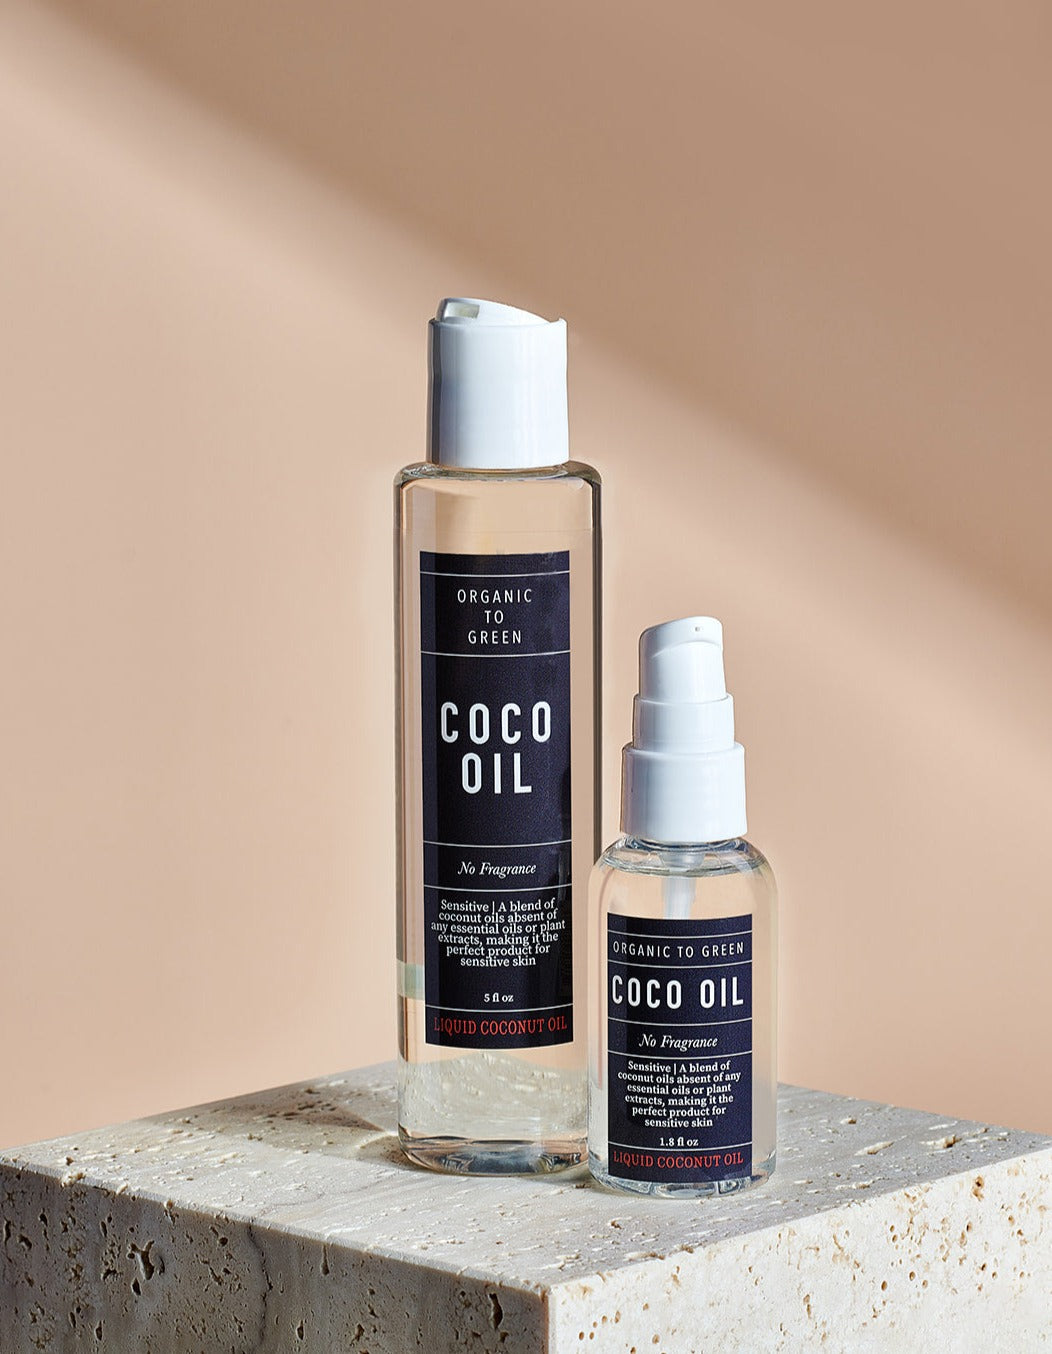 Liquid Coconut Oil - Non-Fragranced Coco Oil 1.8oz